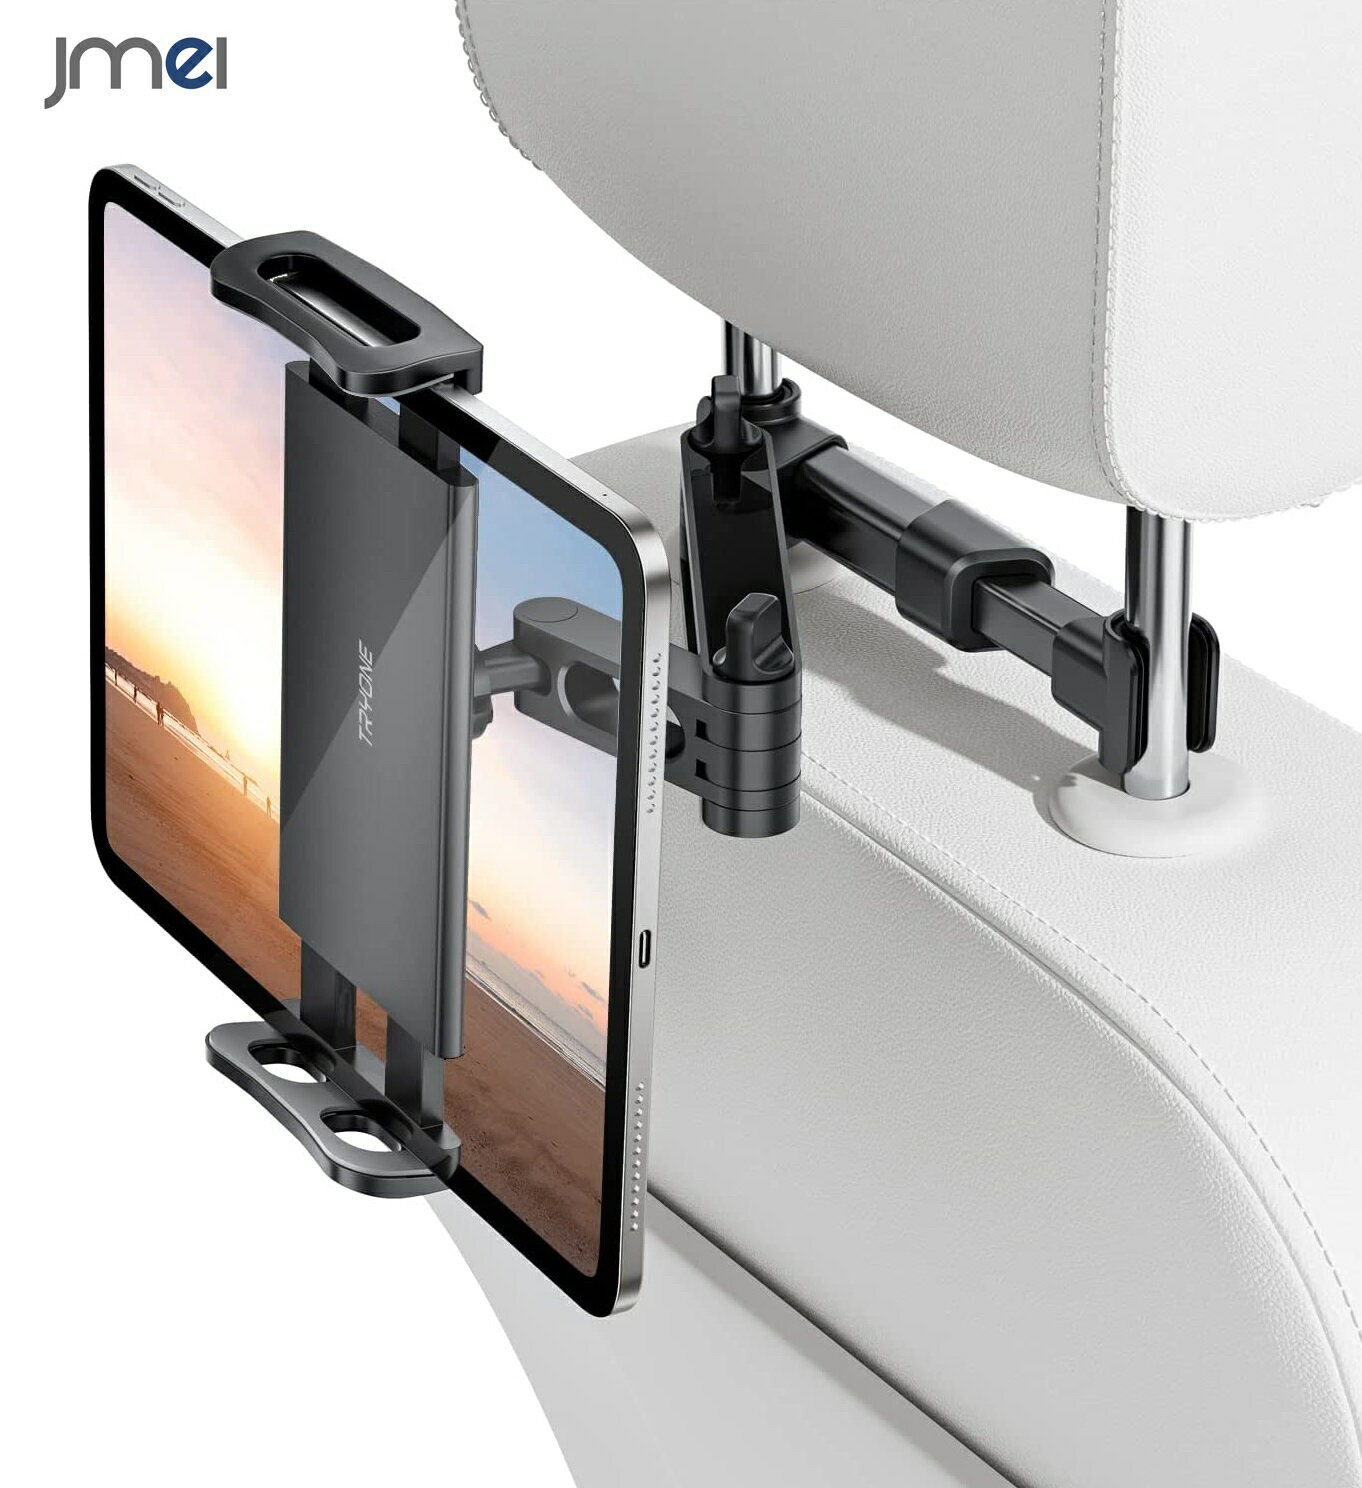 車載ホルダー 後部座席 タブレット ホルダー 車載ホルダー ヘッドレスト ホルダー 伸縮アームスタンド スマホ ホルダー ヘッドレスト バーの適用幅範囲12cm-15cm 後部座席用4.7-11 Nintendo Switch iPad mini air Galaxy Tab Google ニンテンドー スイッチ